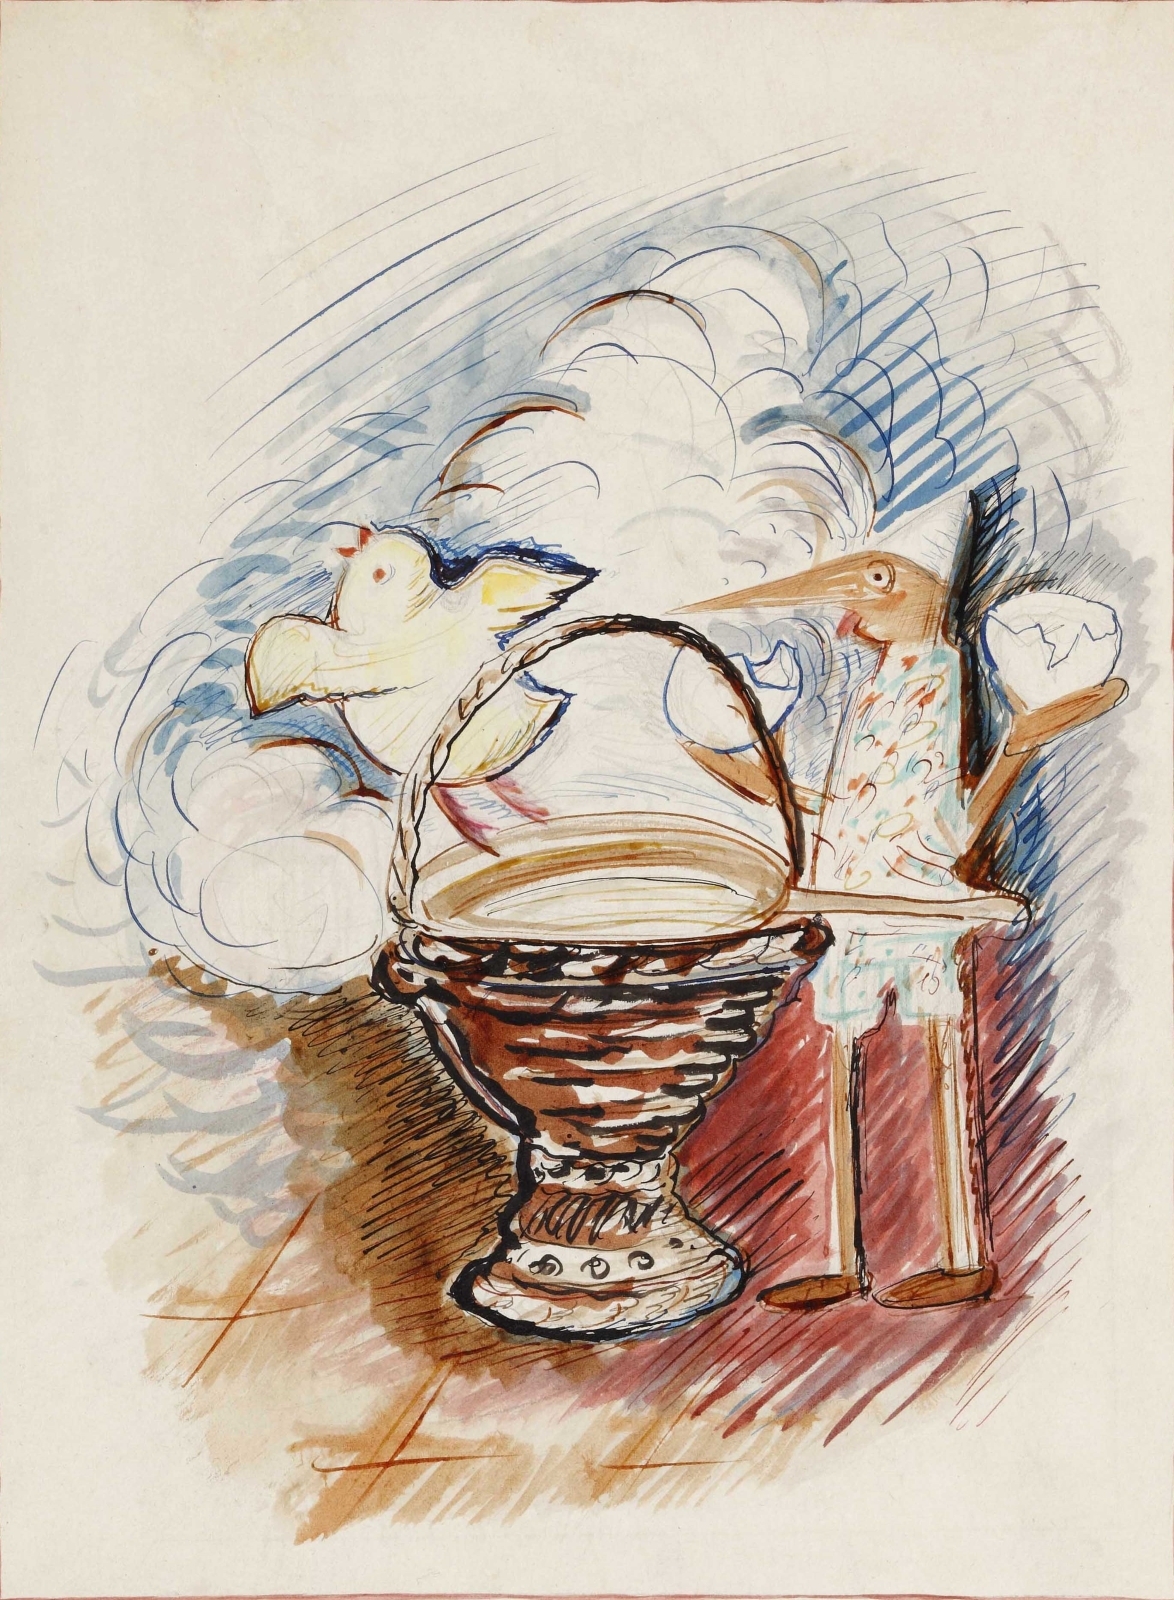 Иллюстрация к сказке К. Коллоди «Пиноккио». 1933 